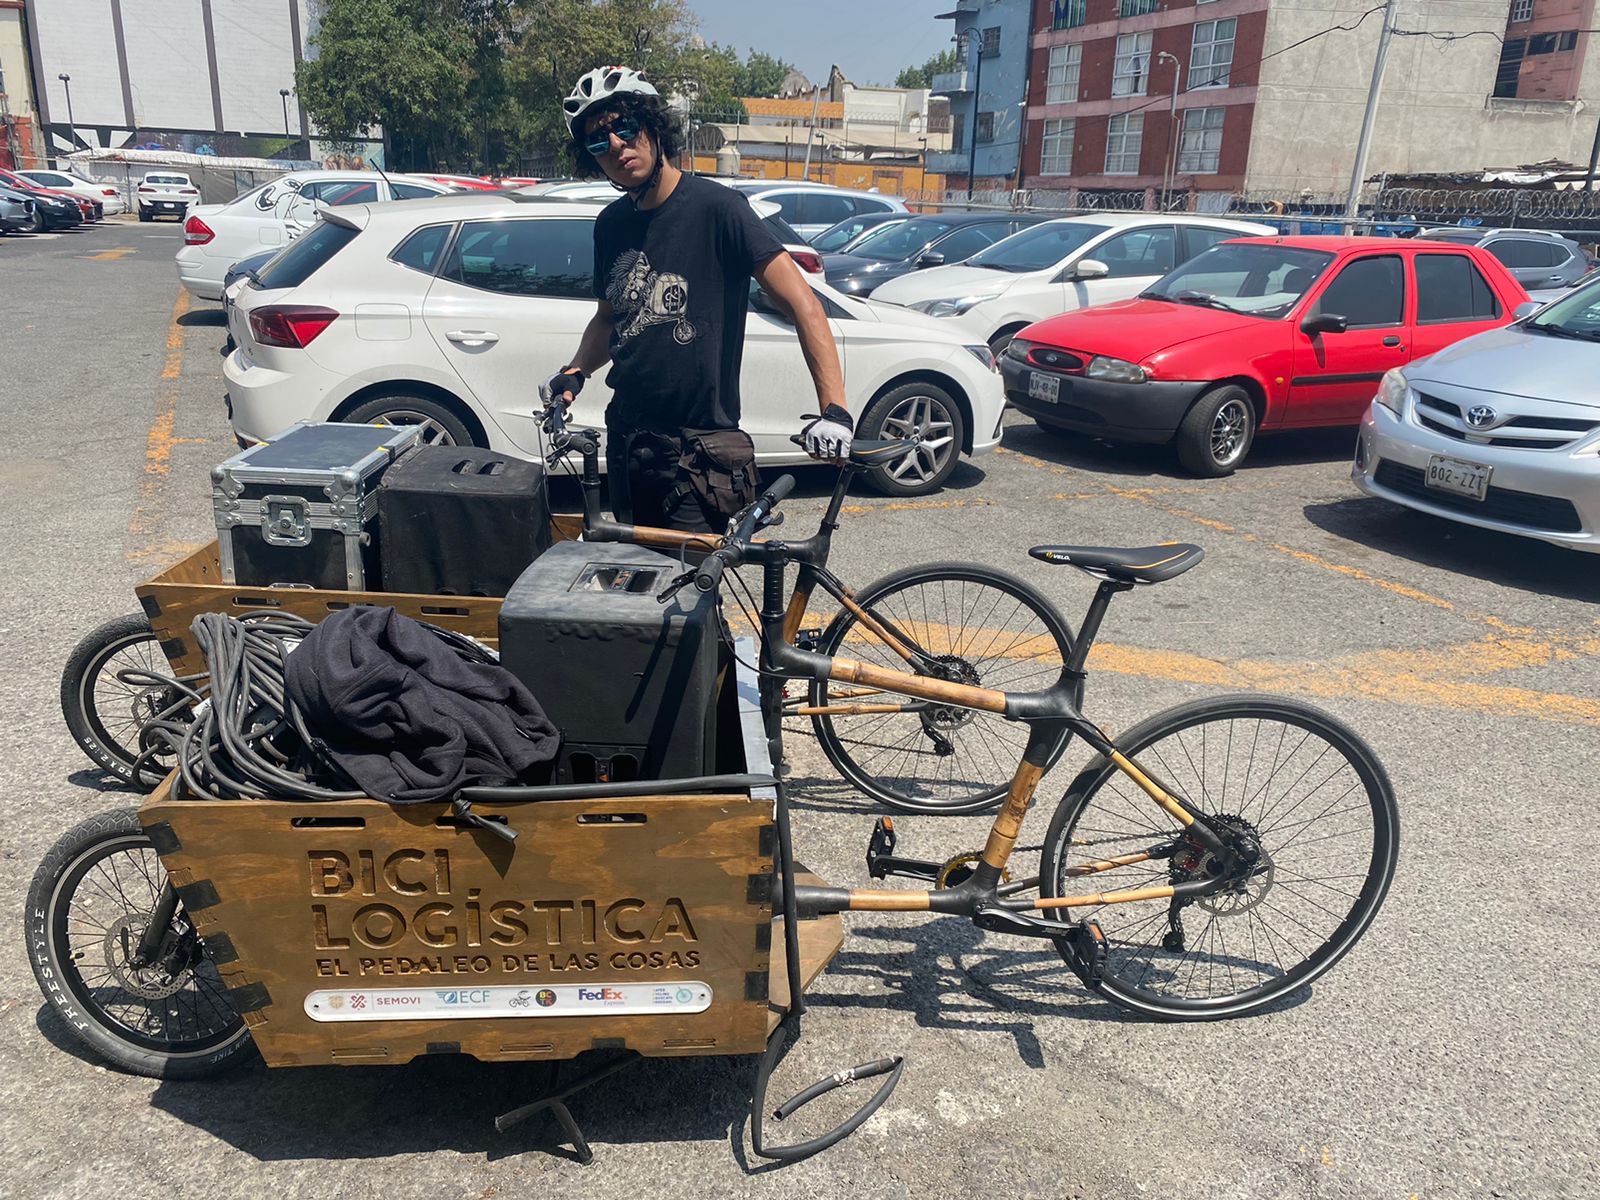 Cargo bikes in Mexico city, Mexico